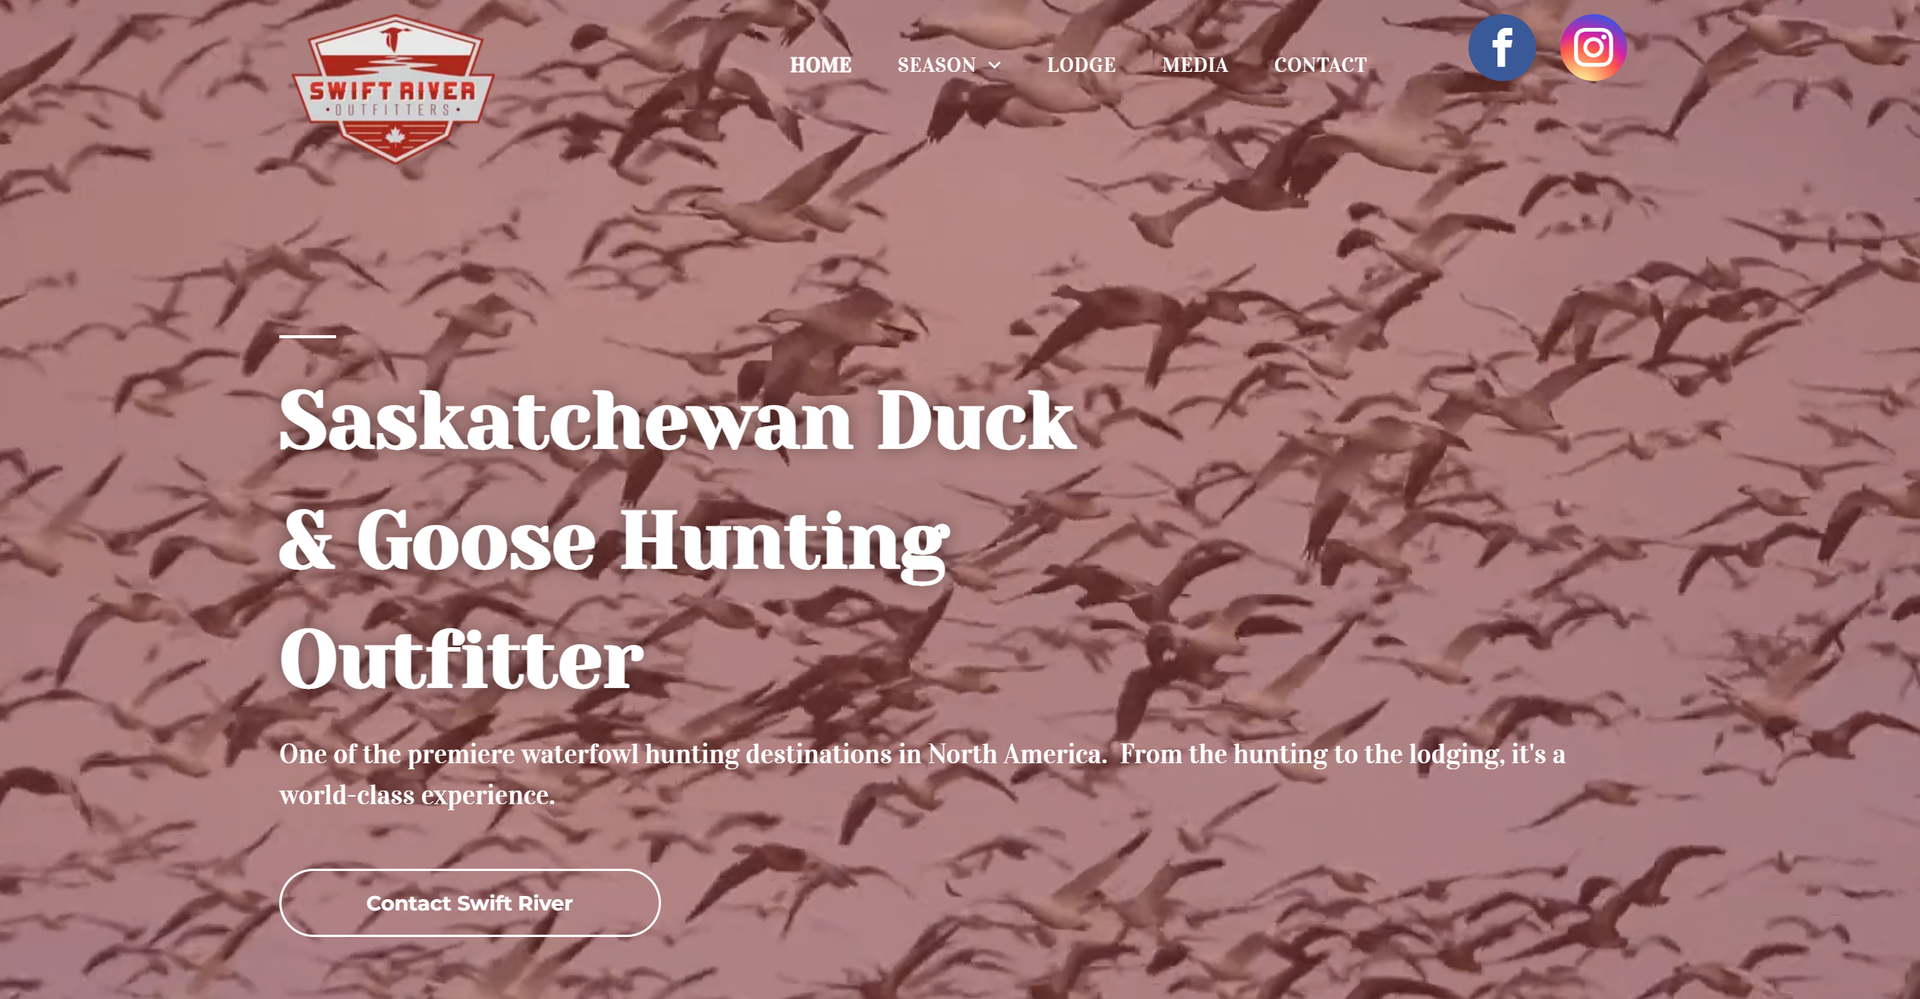 hunting guide website design